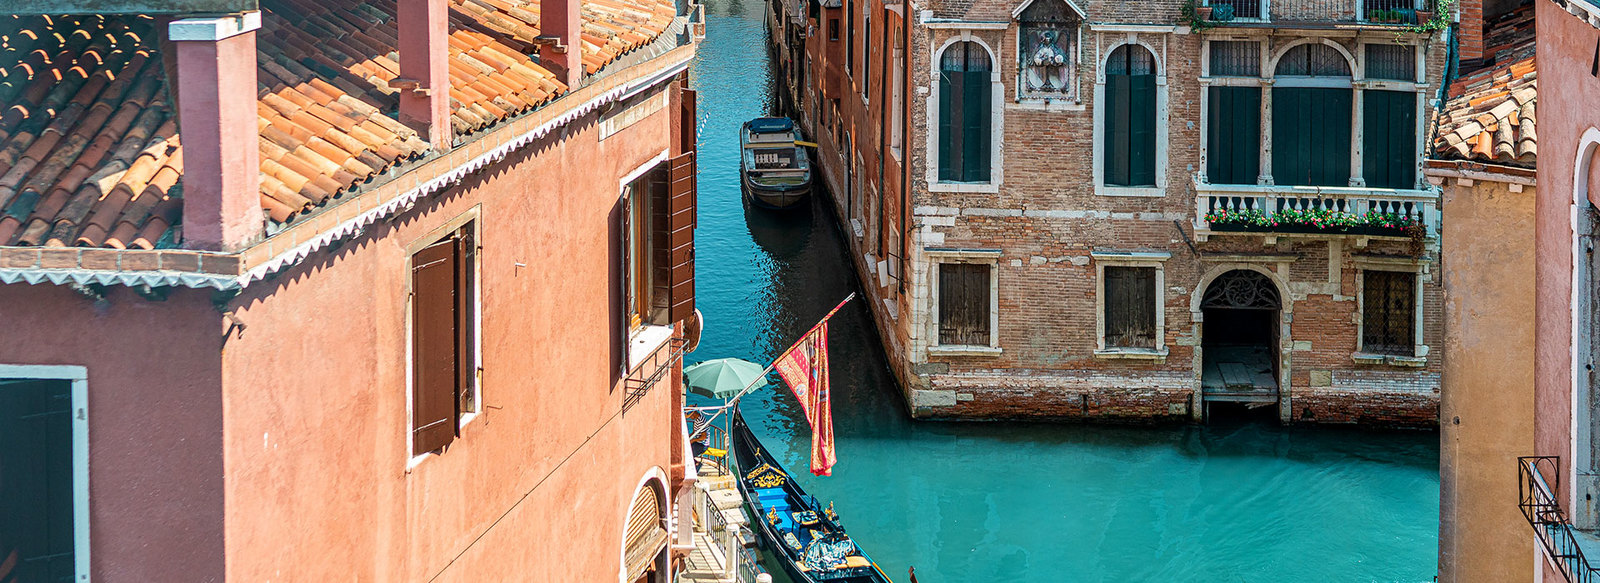 Hotel storico veneziano nel cuore pulsante della città